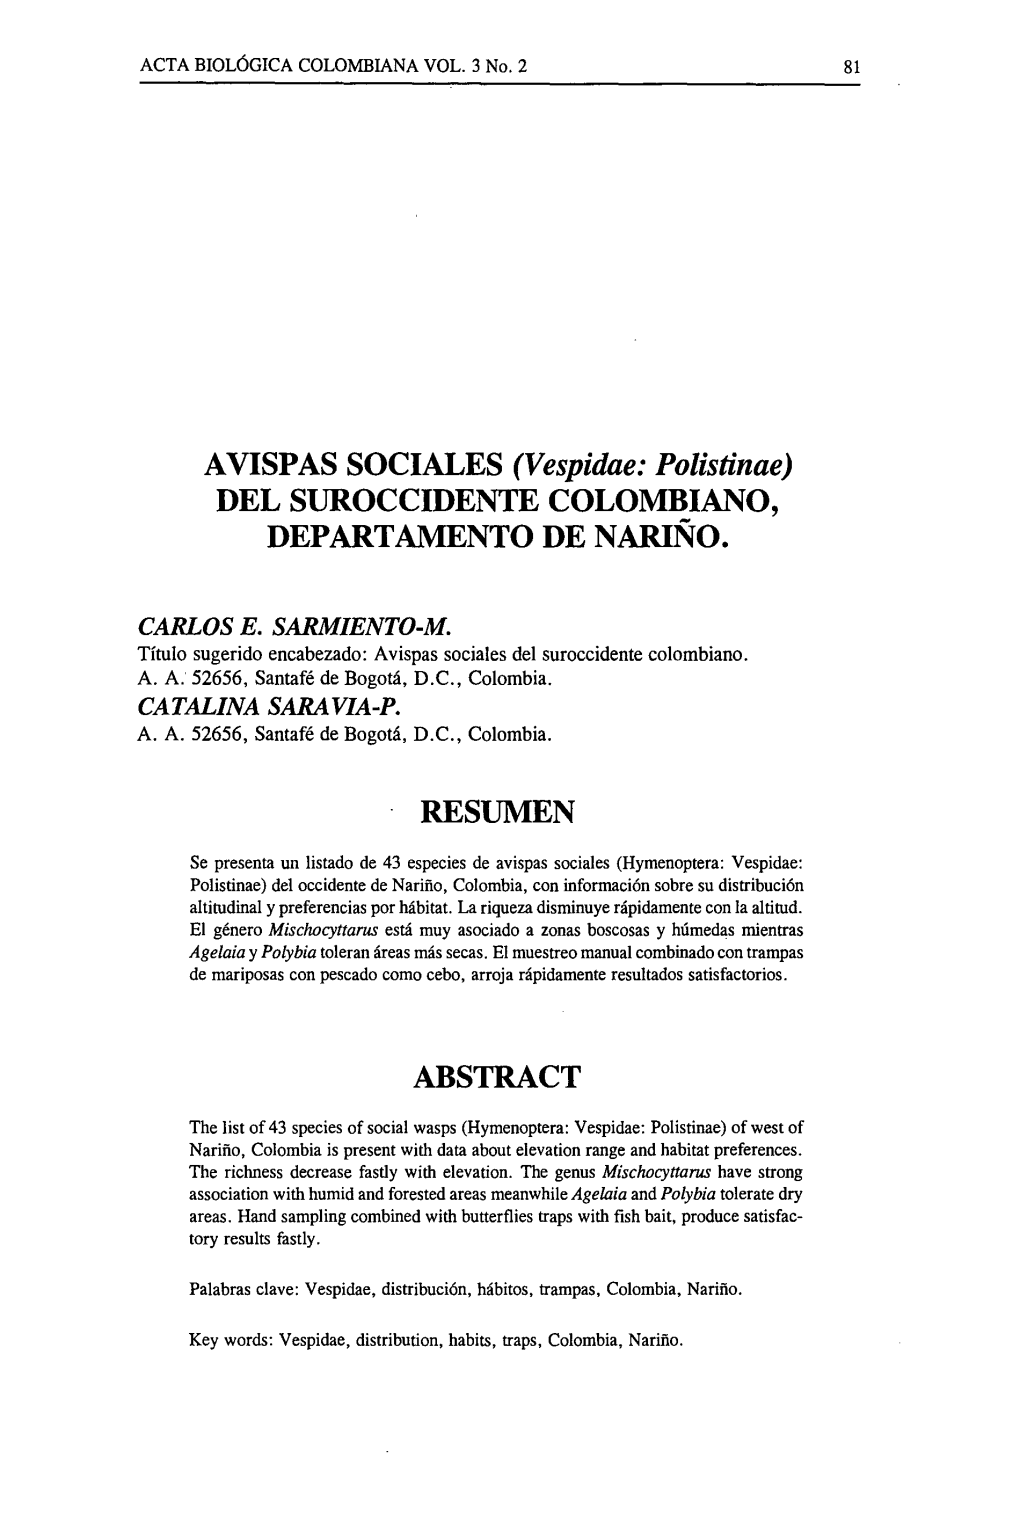 AVISPAS SOCIALES (Vespidae: Polistinae) DEL SUROCCIDENTE COLOMBIANO, DEPARTAMENTO DE NARIÑO